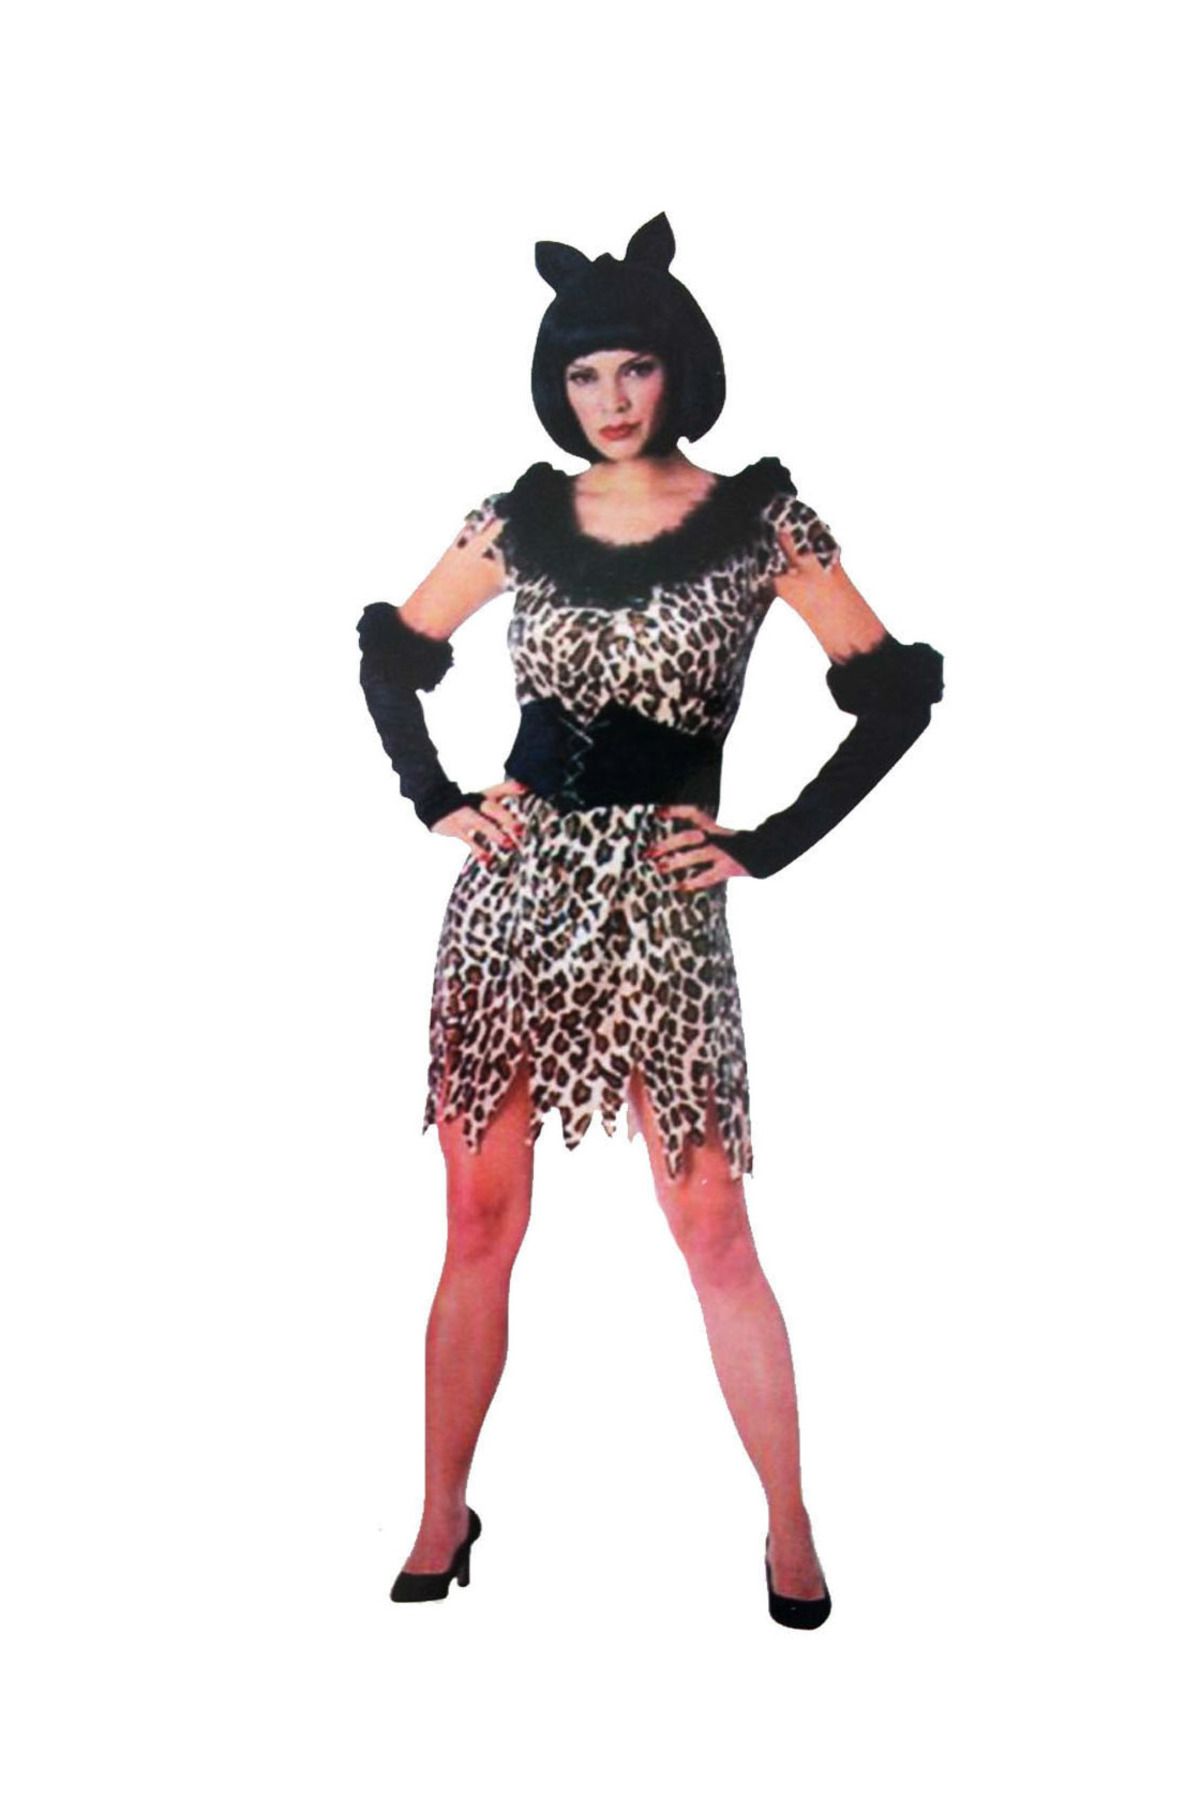 Genel Markalar Yetişkin Leopar Kostümü - Kedi Kız Kostümü - Taş Devri Kostümü (4172)